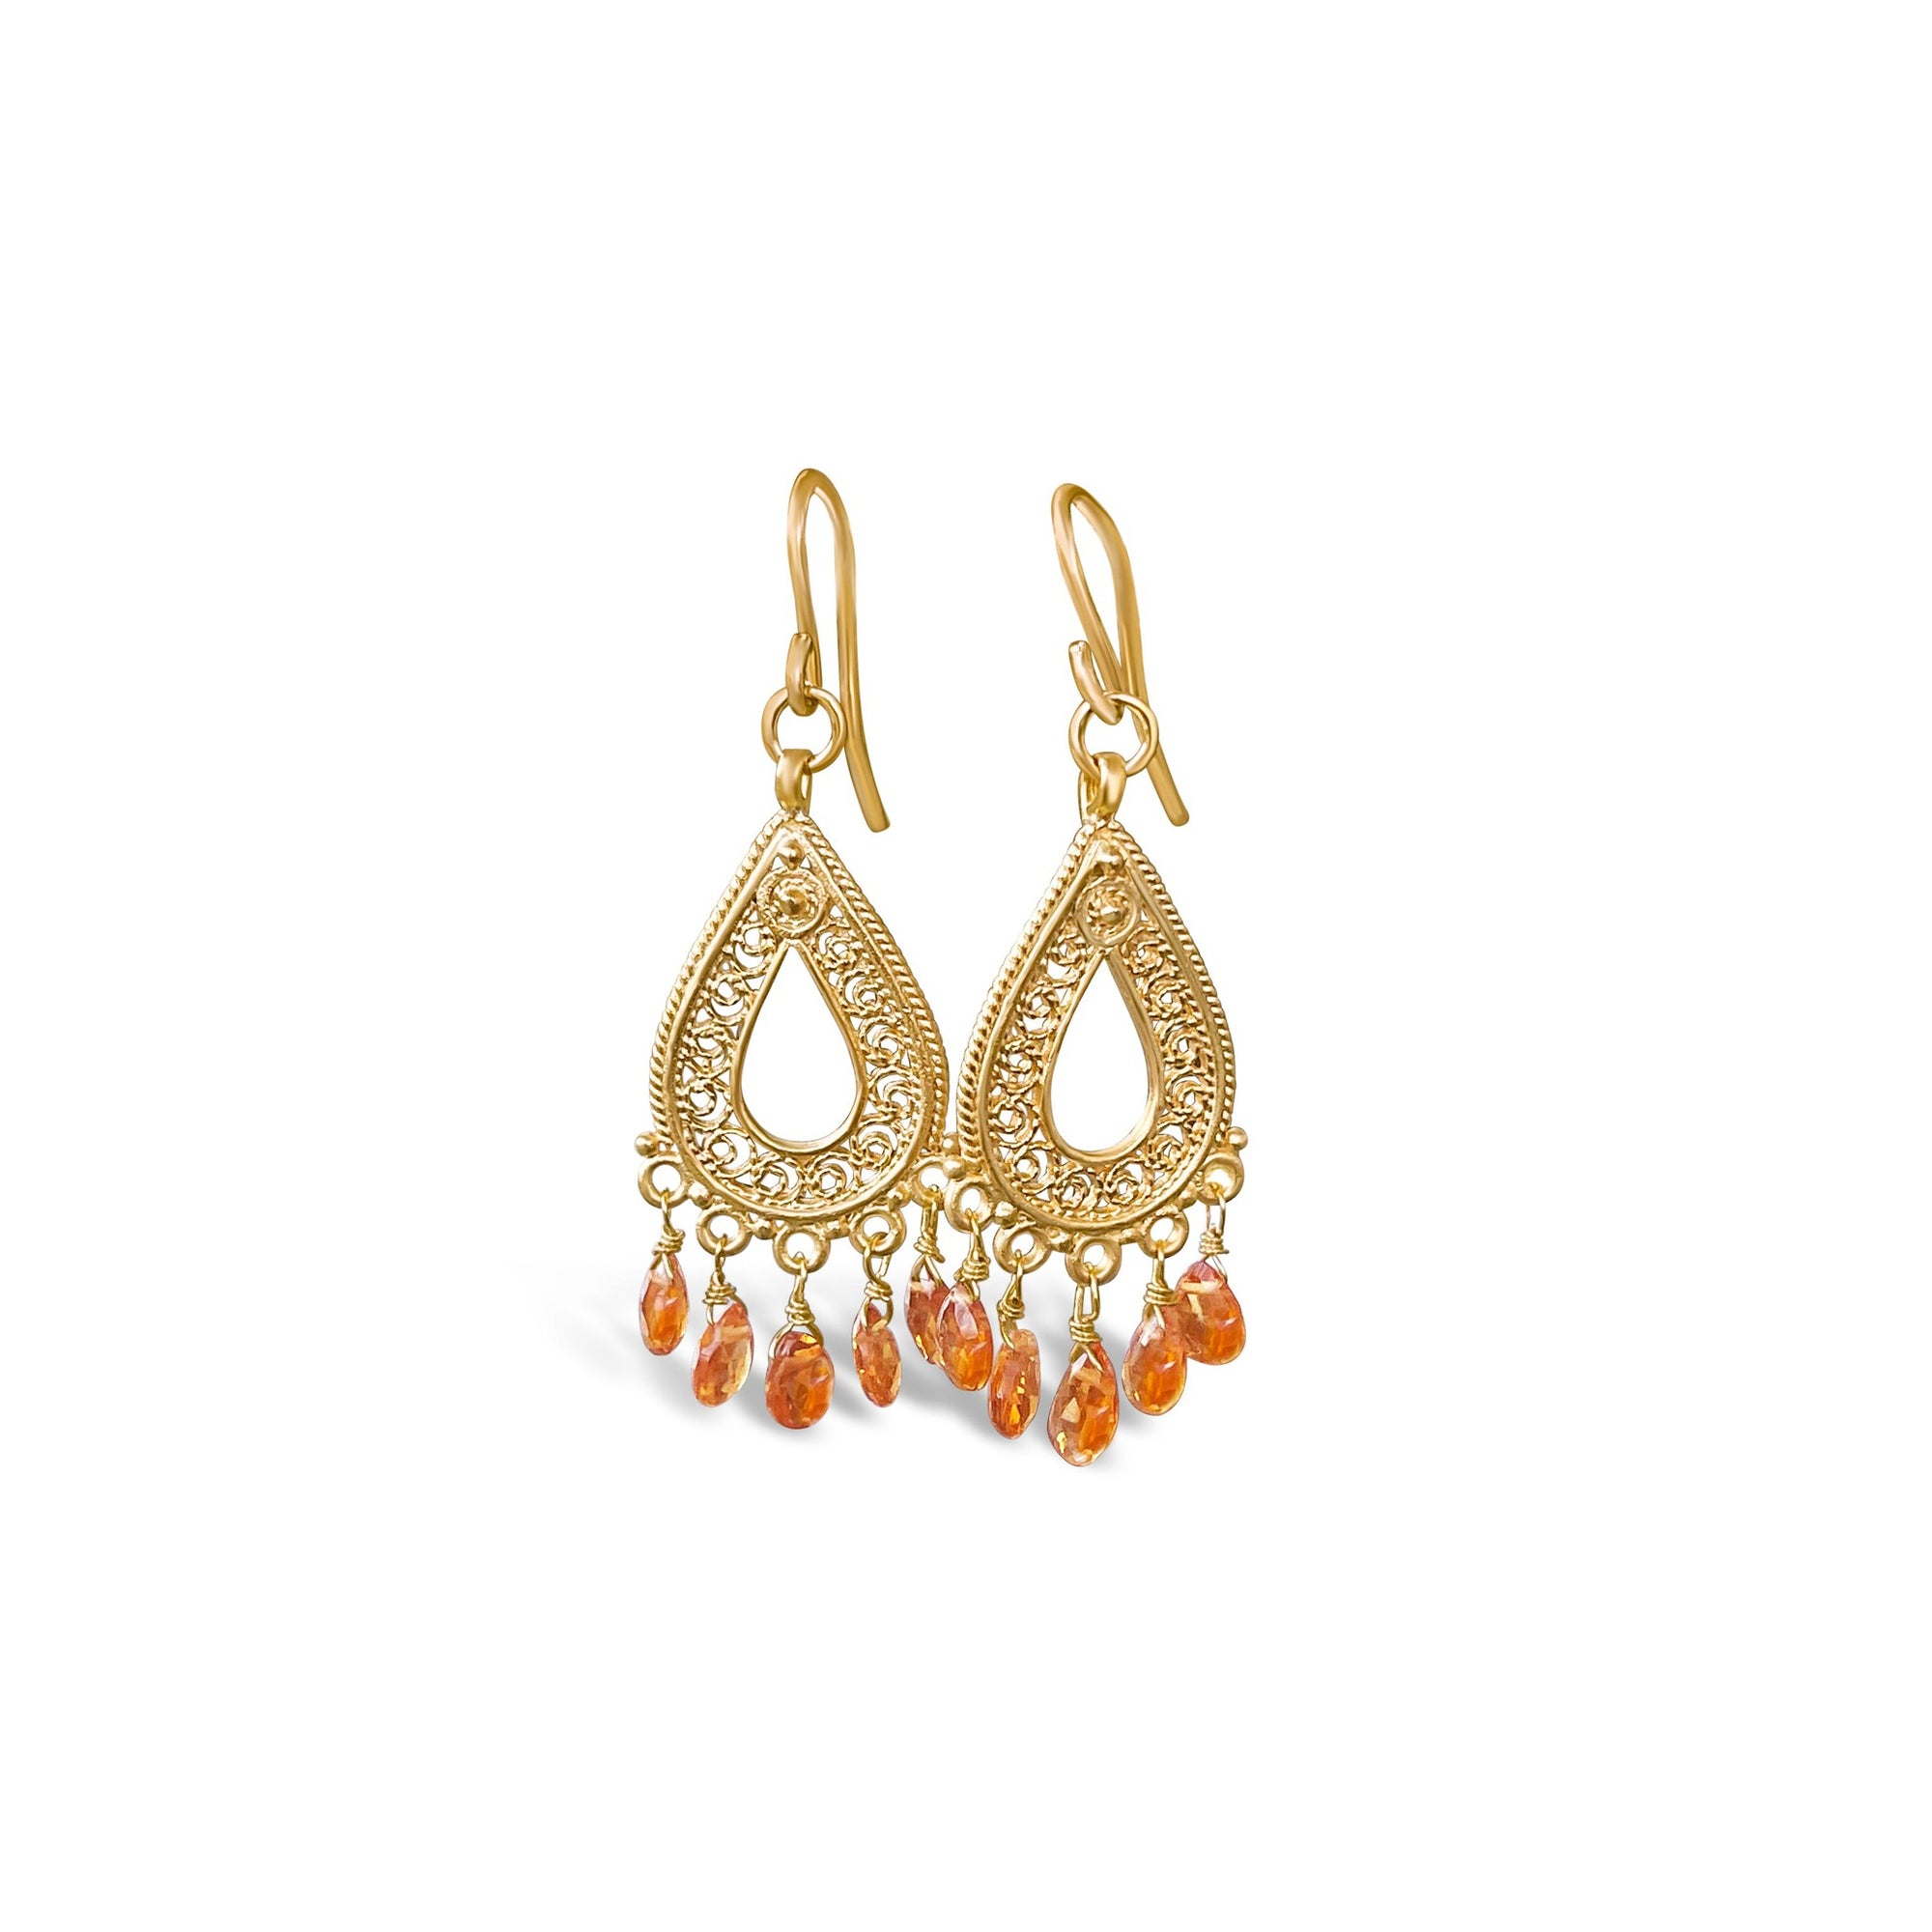 Citrine teardrop chandelier earrings